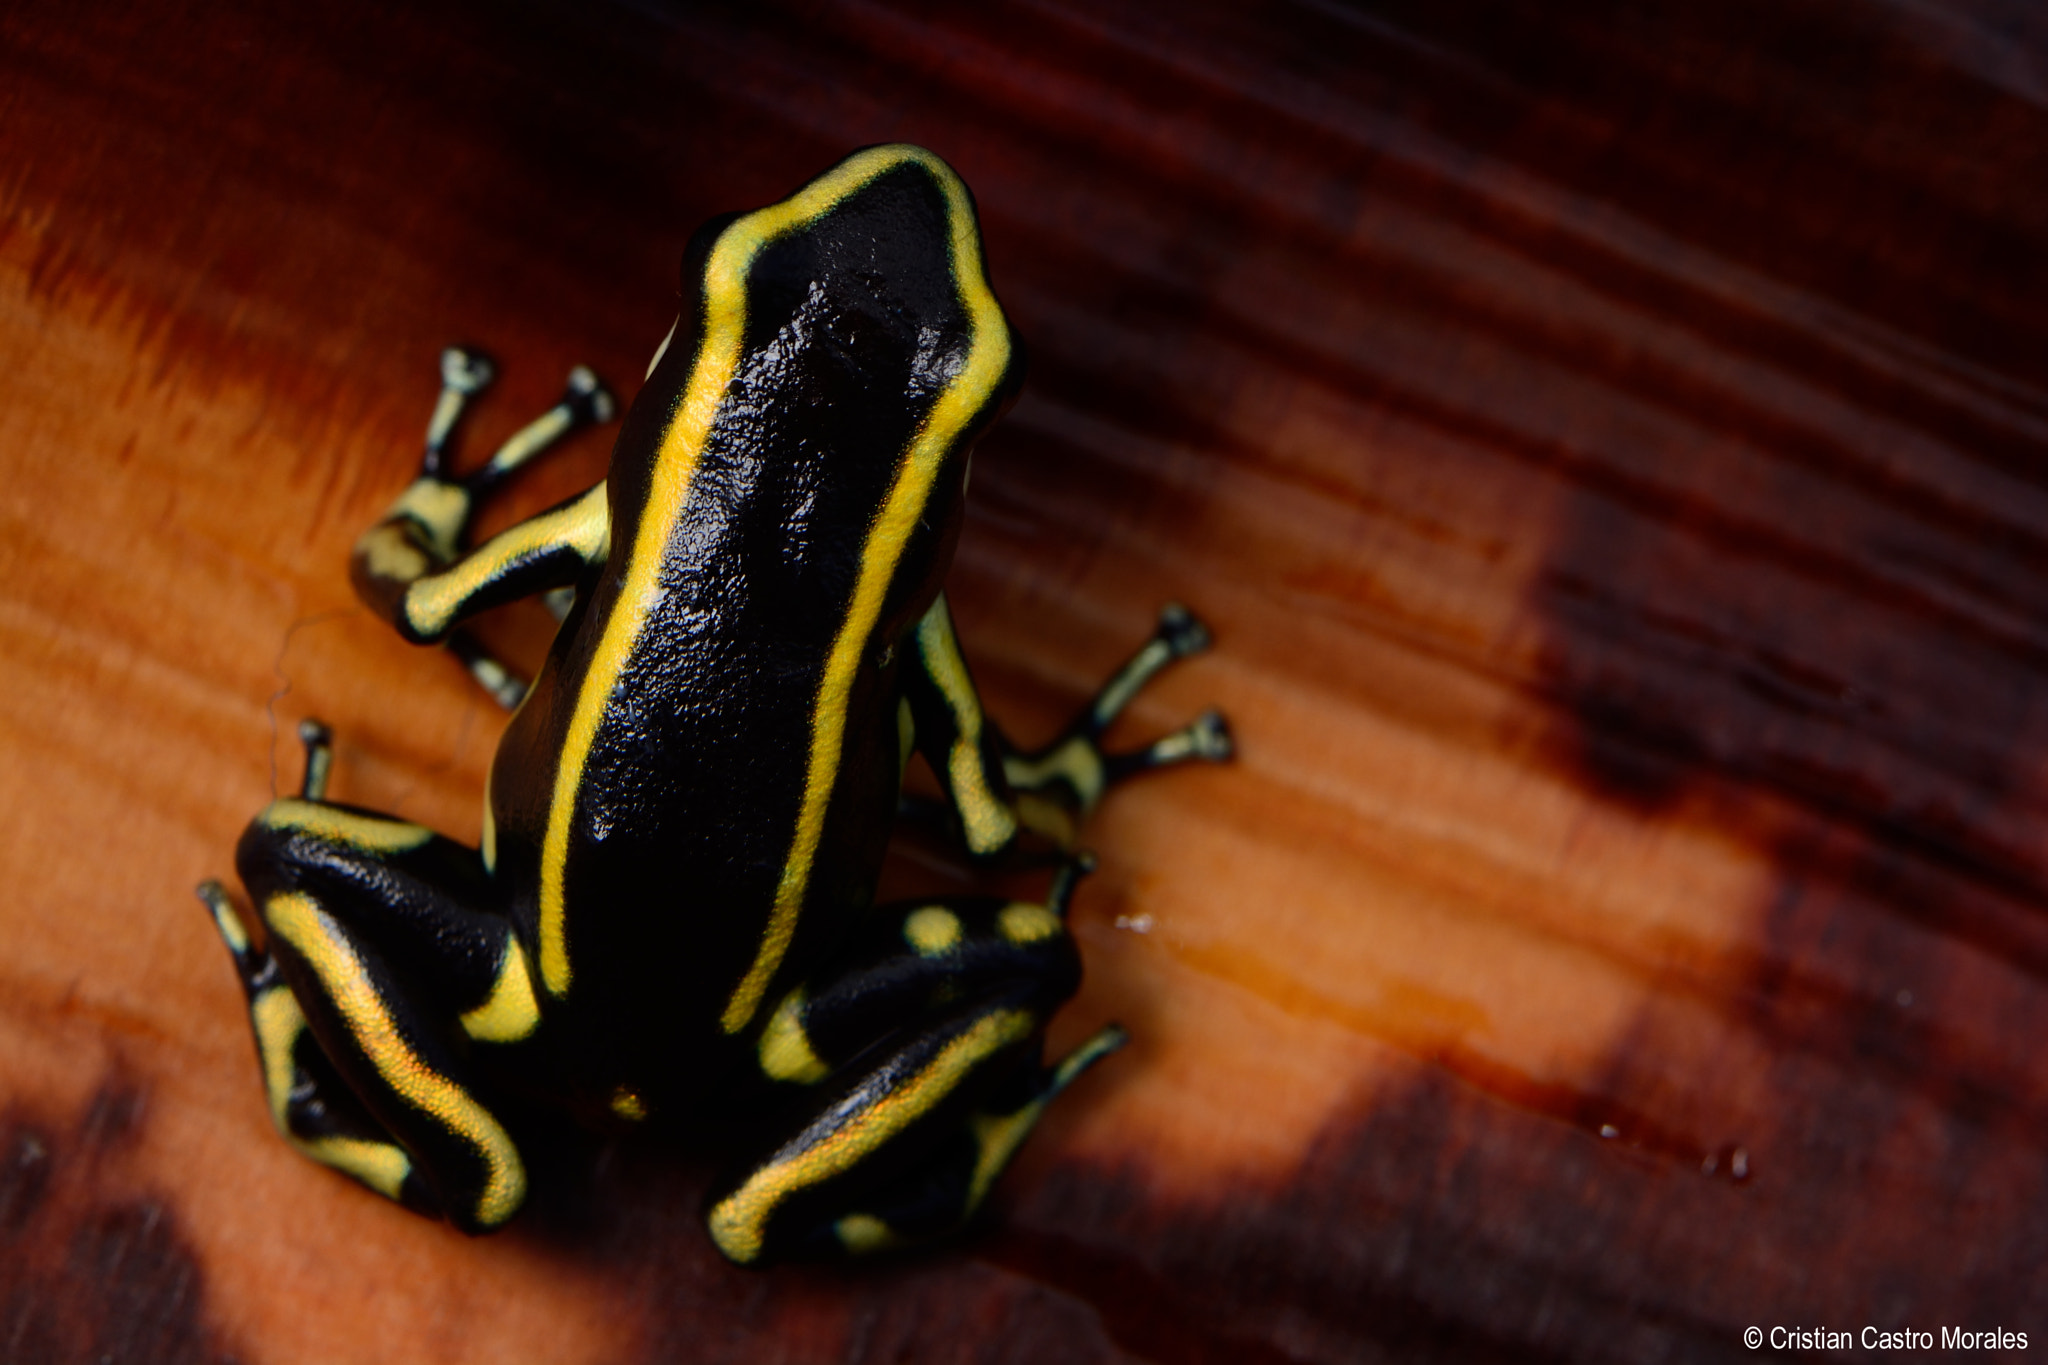 Nikon D7100 sample photo. Dendrobates truncatus (yellow-striped poison frog) photography